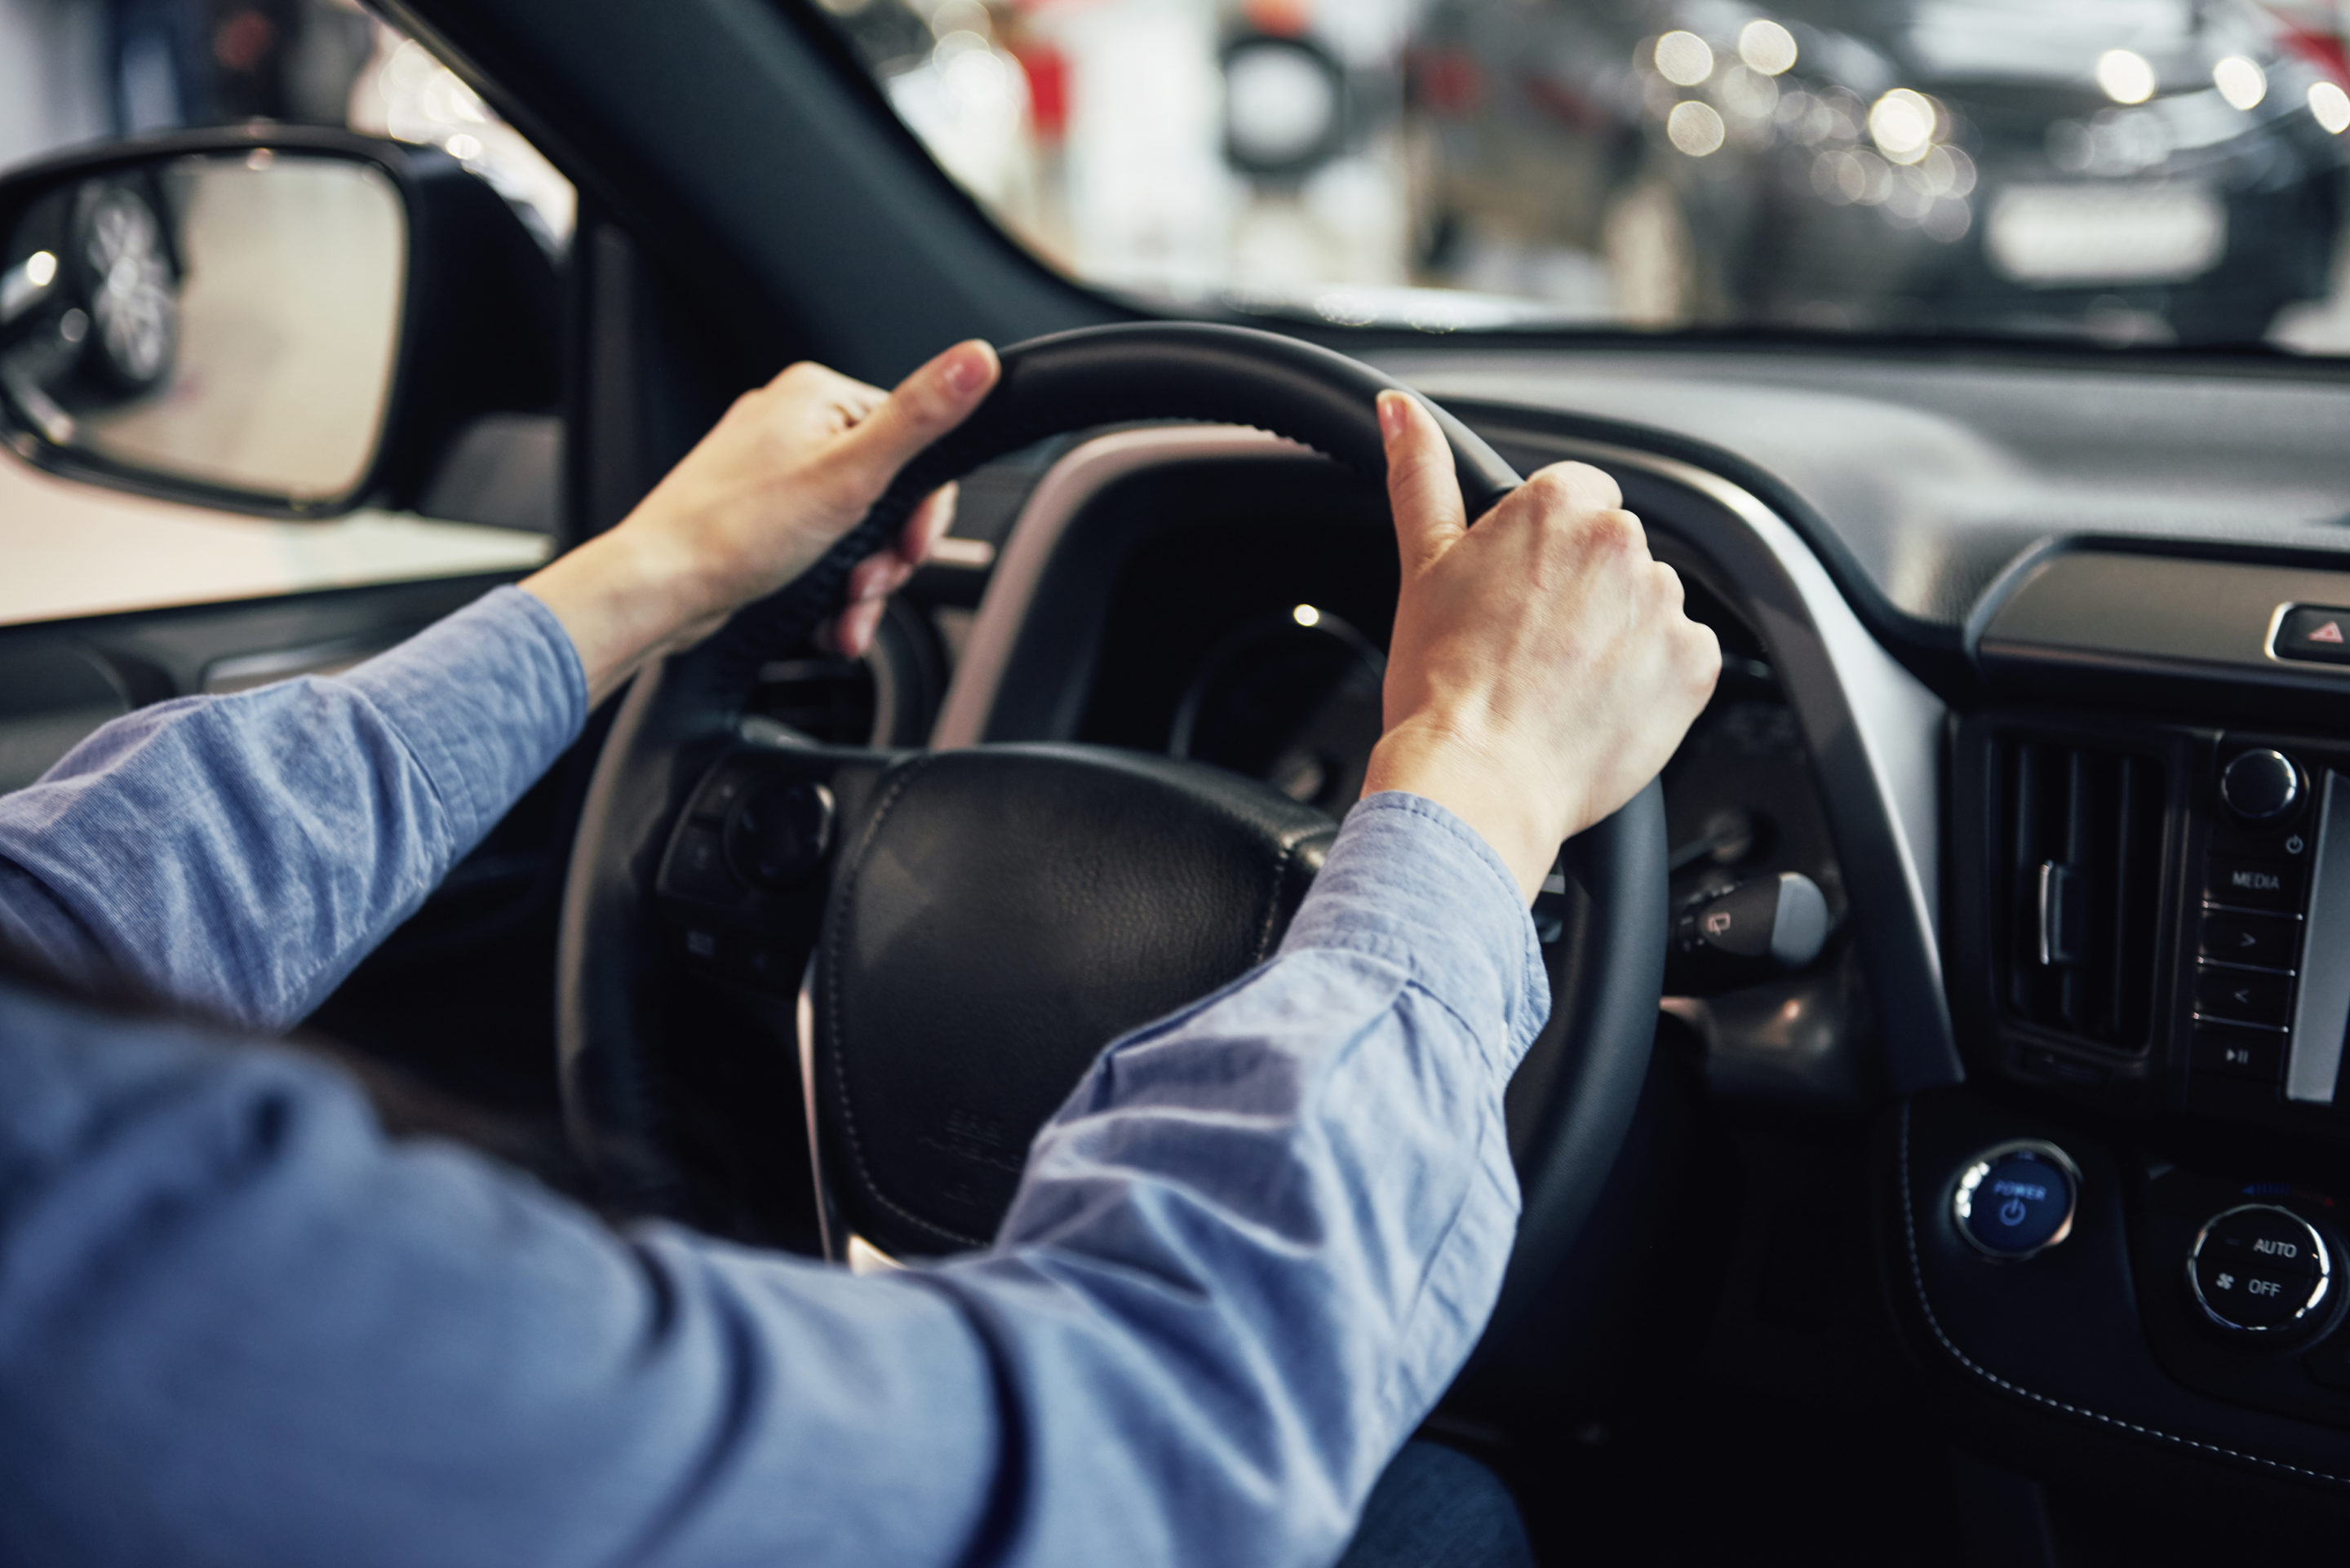 imagen de un hombre dentro de un coche con las manos en el volante, para el artículo sobre accidentes de tráfico